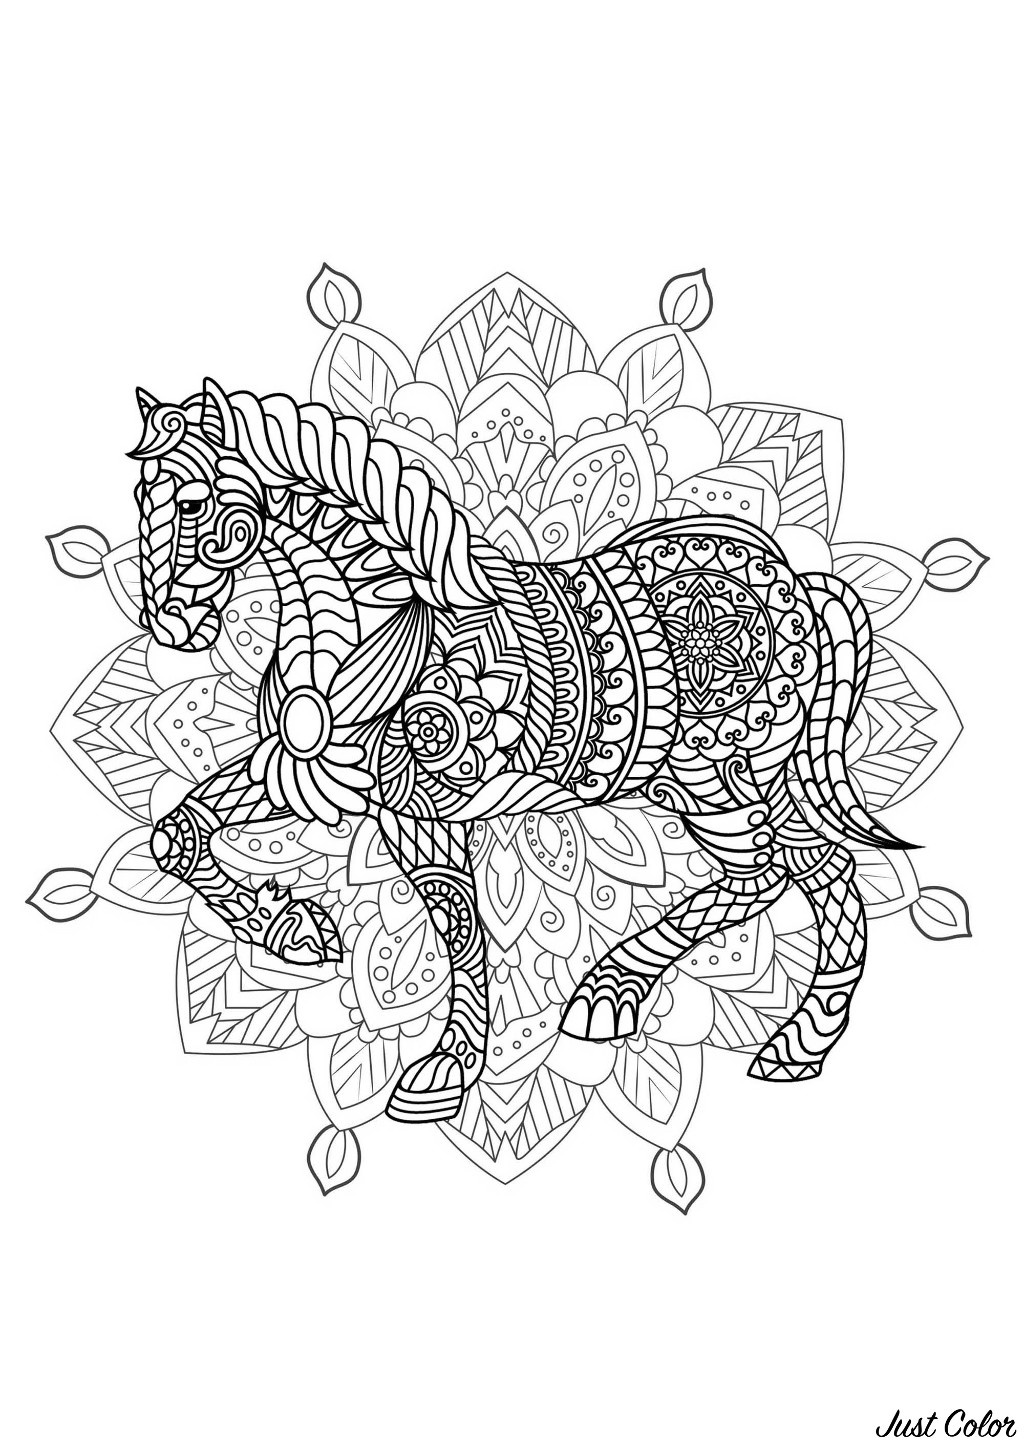 Mandala para colorear con hermosos Caballos y complejos dibujos de fondo